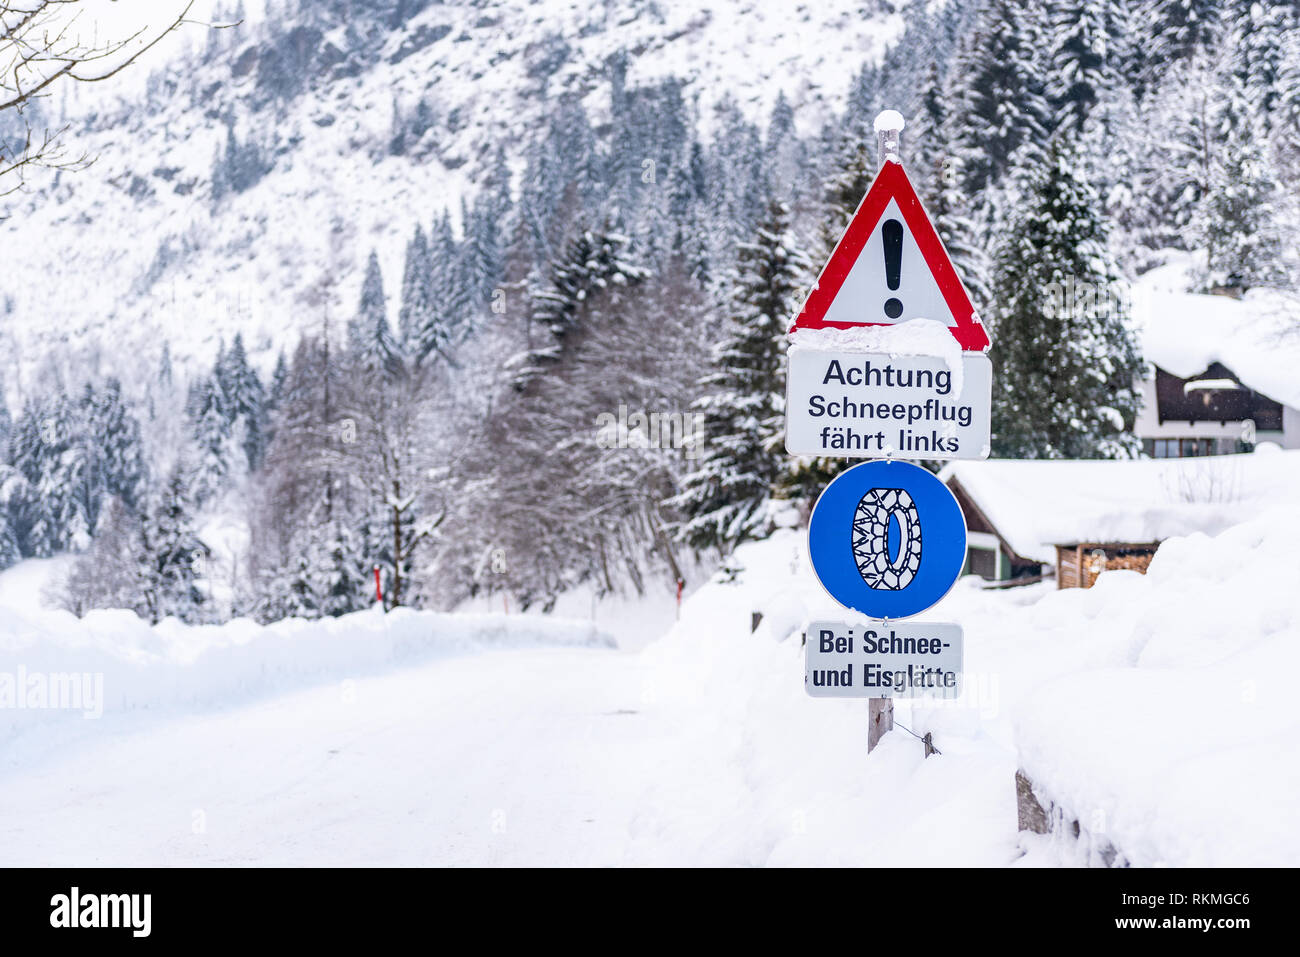 Kette Verkehrsschild, bei Schnee- und Eisglätte Warnung, Winterdienst, Schneeketten Pflicht. Schnee weg und Bäume. Österreich, Europa Stockfoto